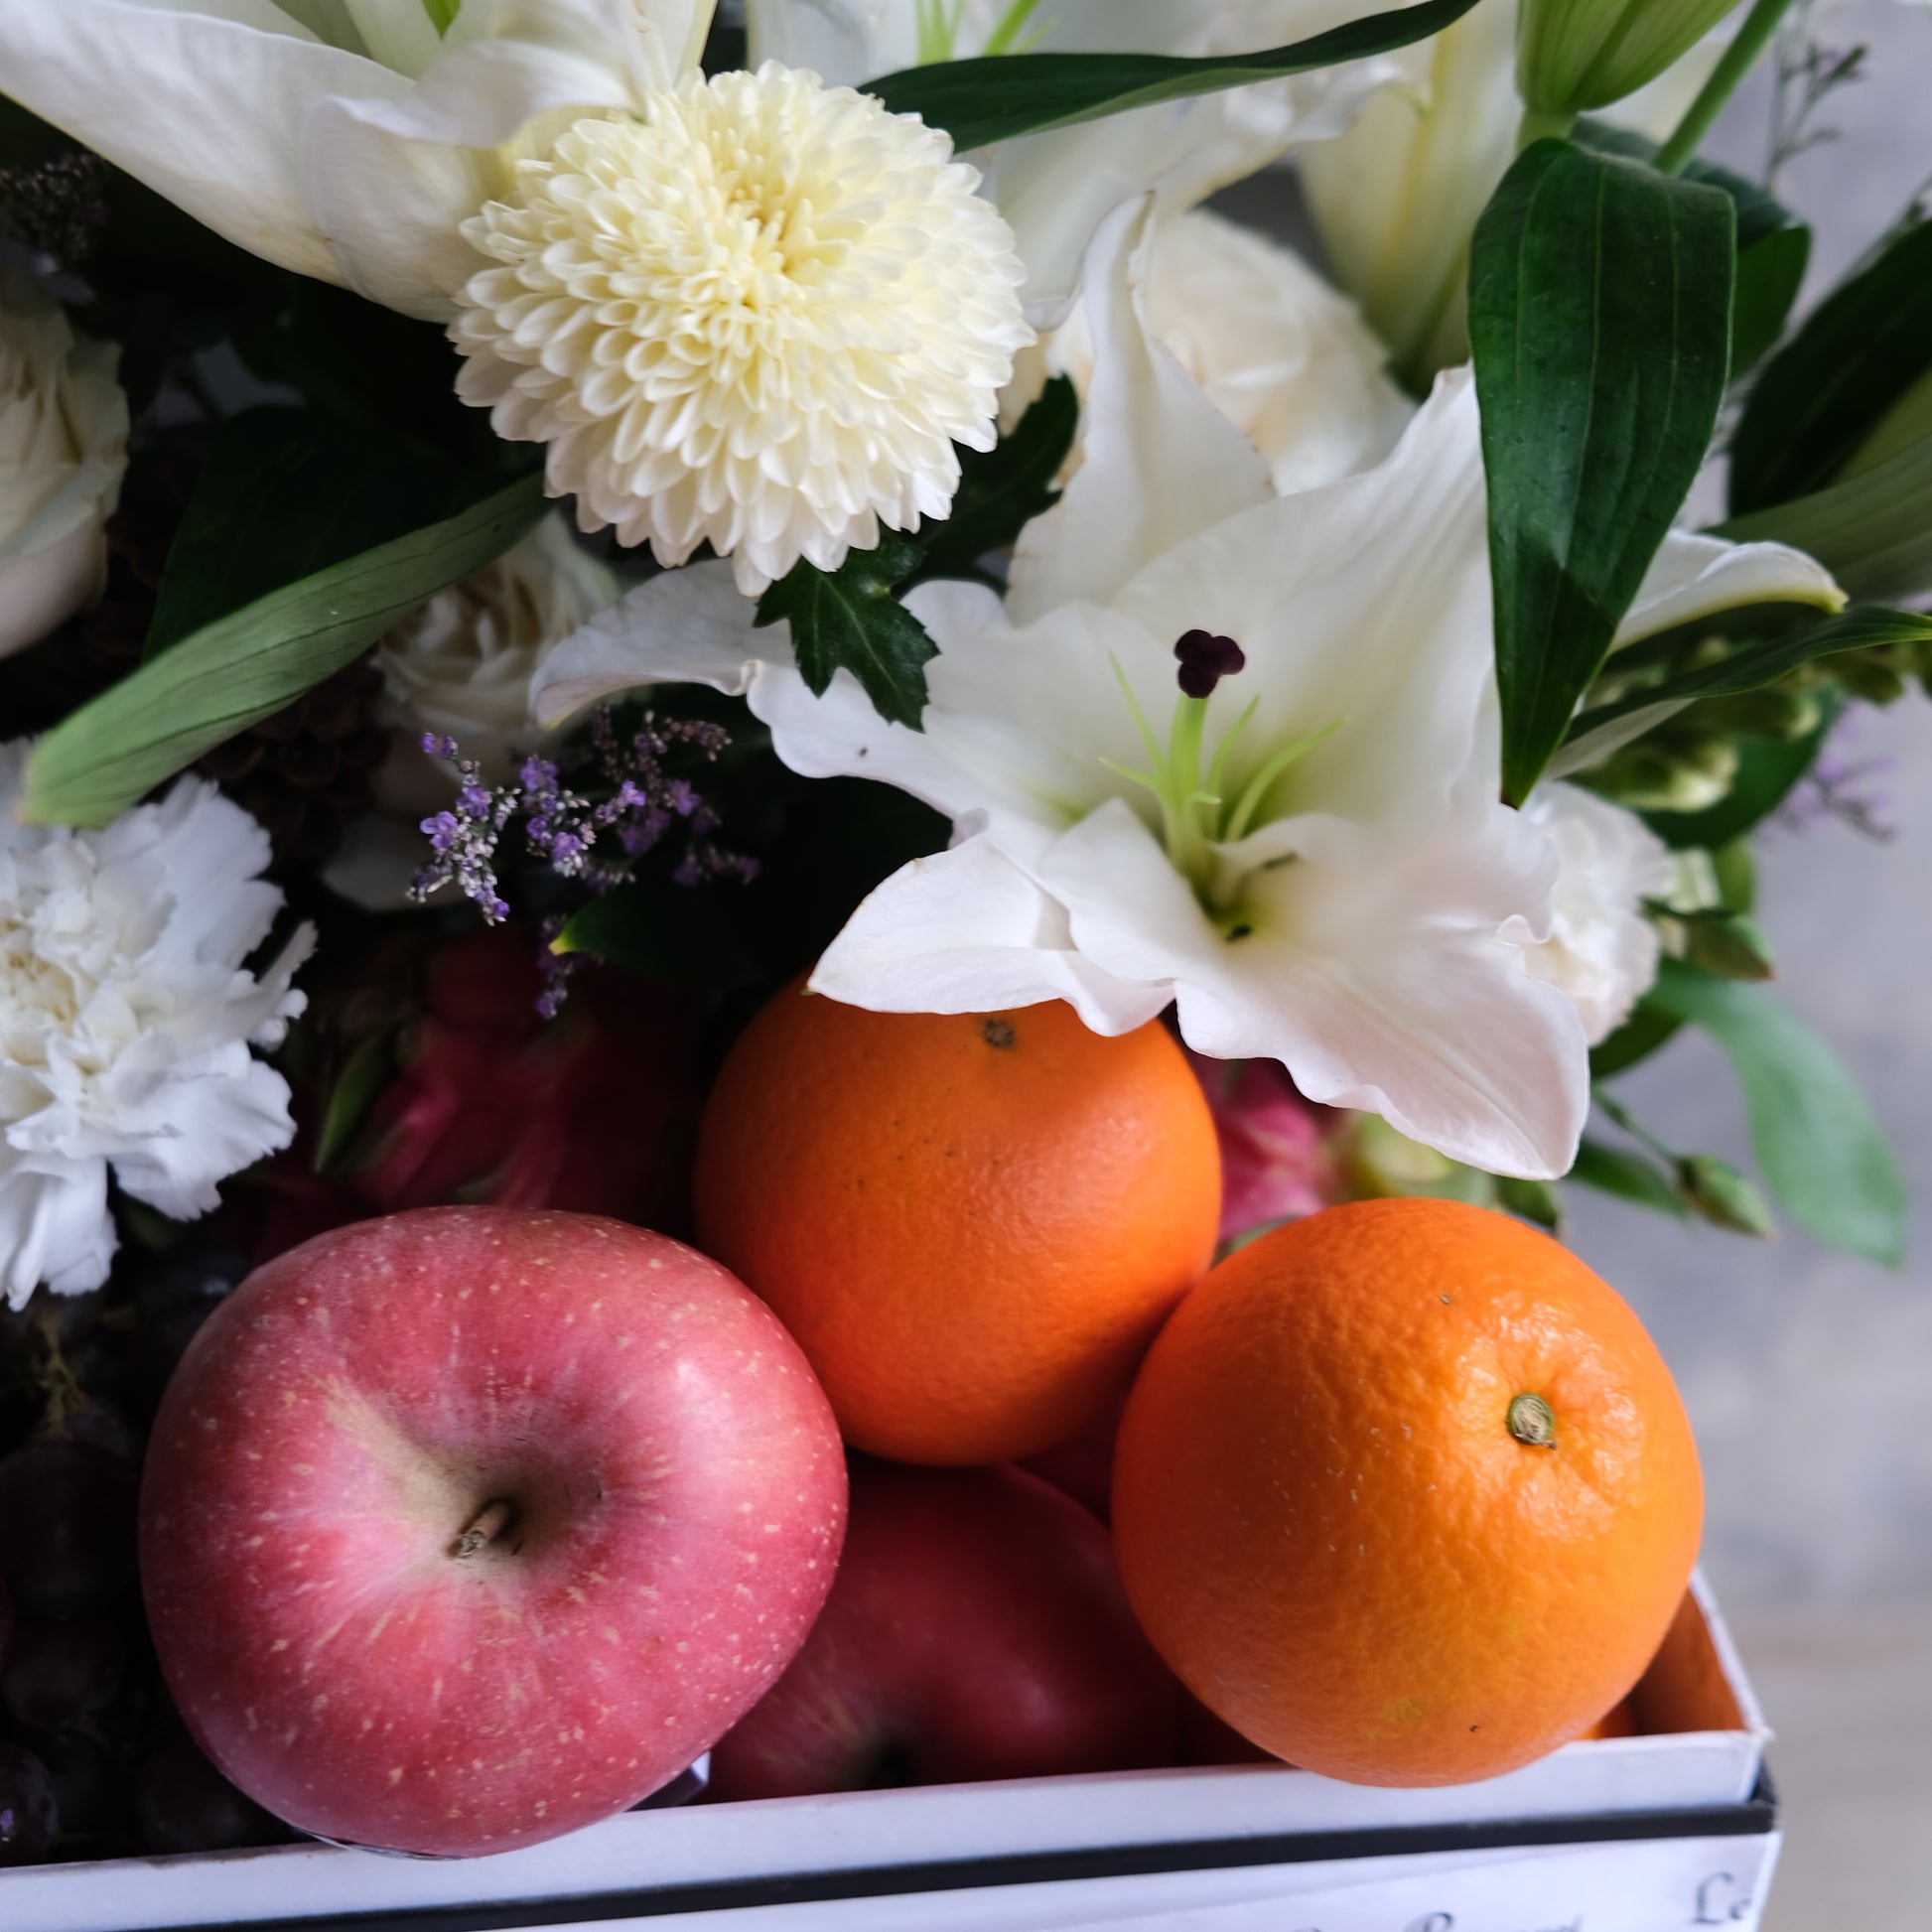 Premium Box Fruit Flower Parcel - Le Bliss Bouquet